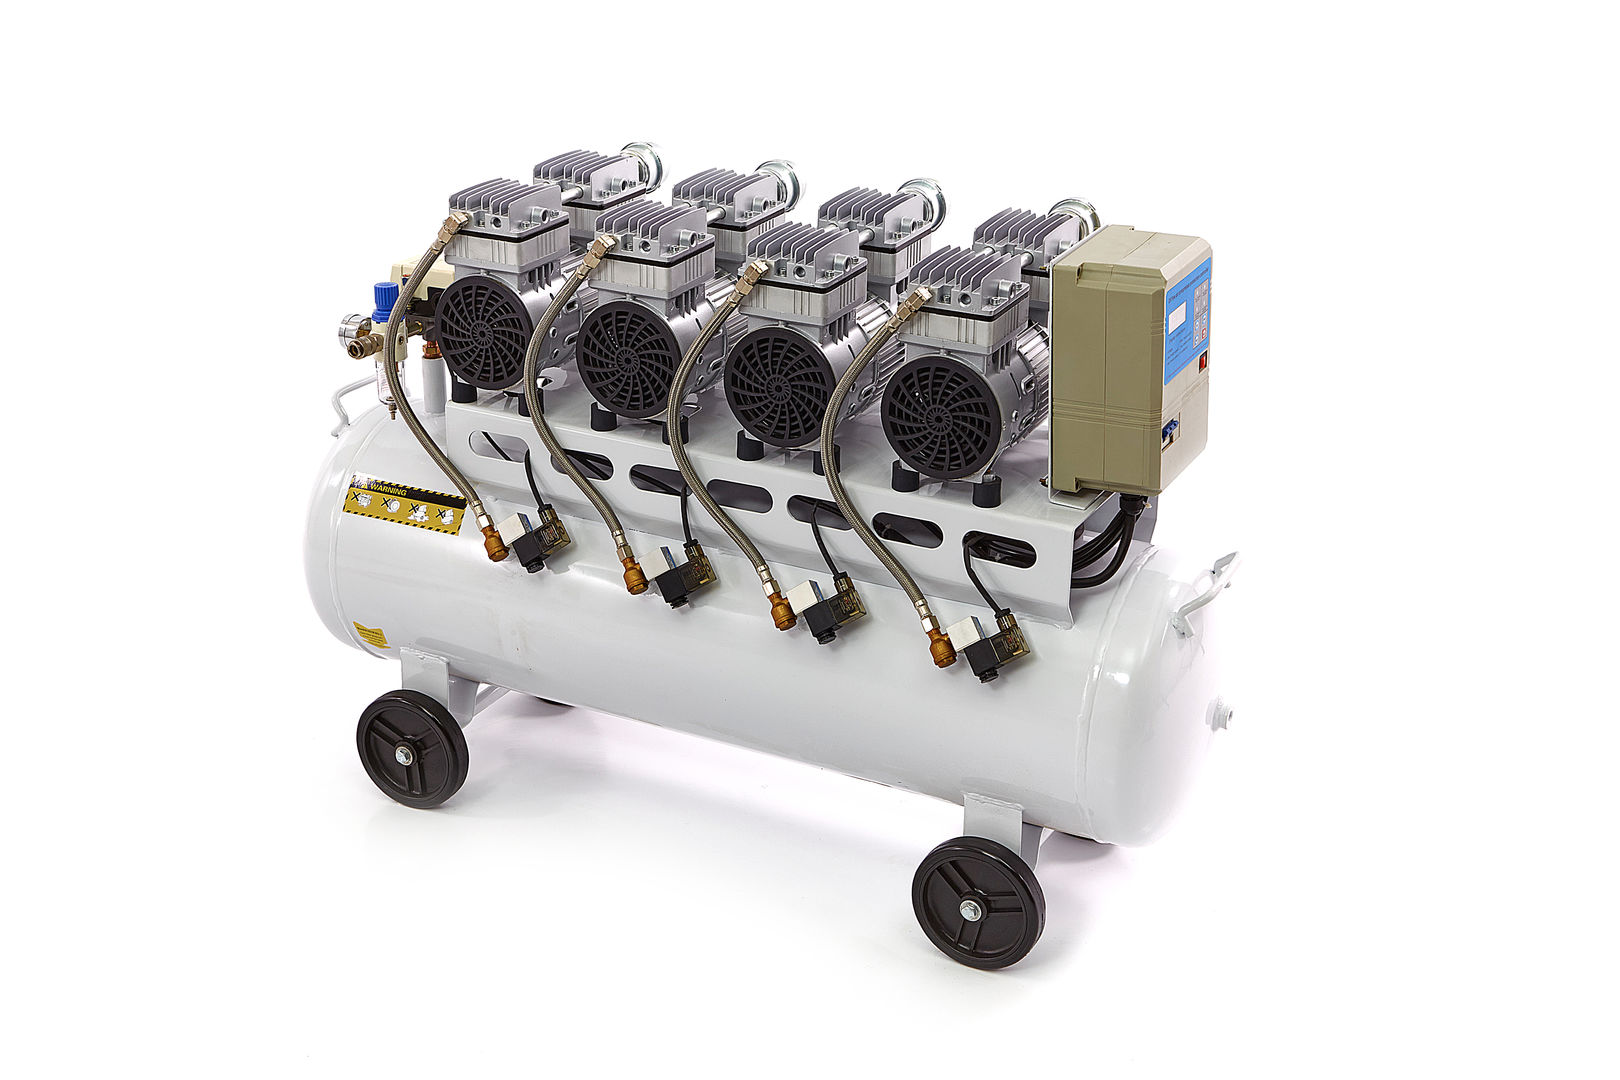 https://www.werkzeugmaschinen-baxmeier.de/media/image/bf/49/63/6294-hb-120-liter-super-leiser-kompressor-mit-10-bar-druck-und-120-liter-kessel.jpg